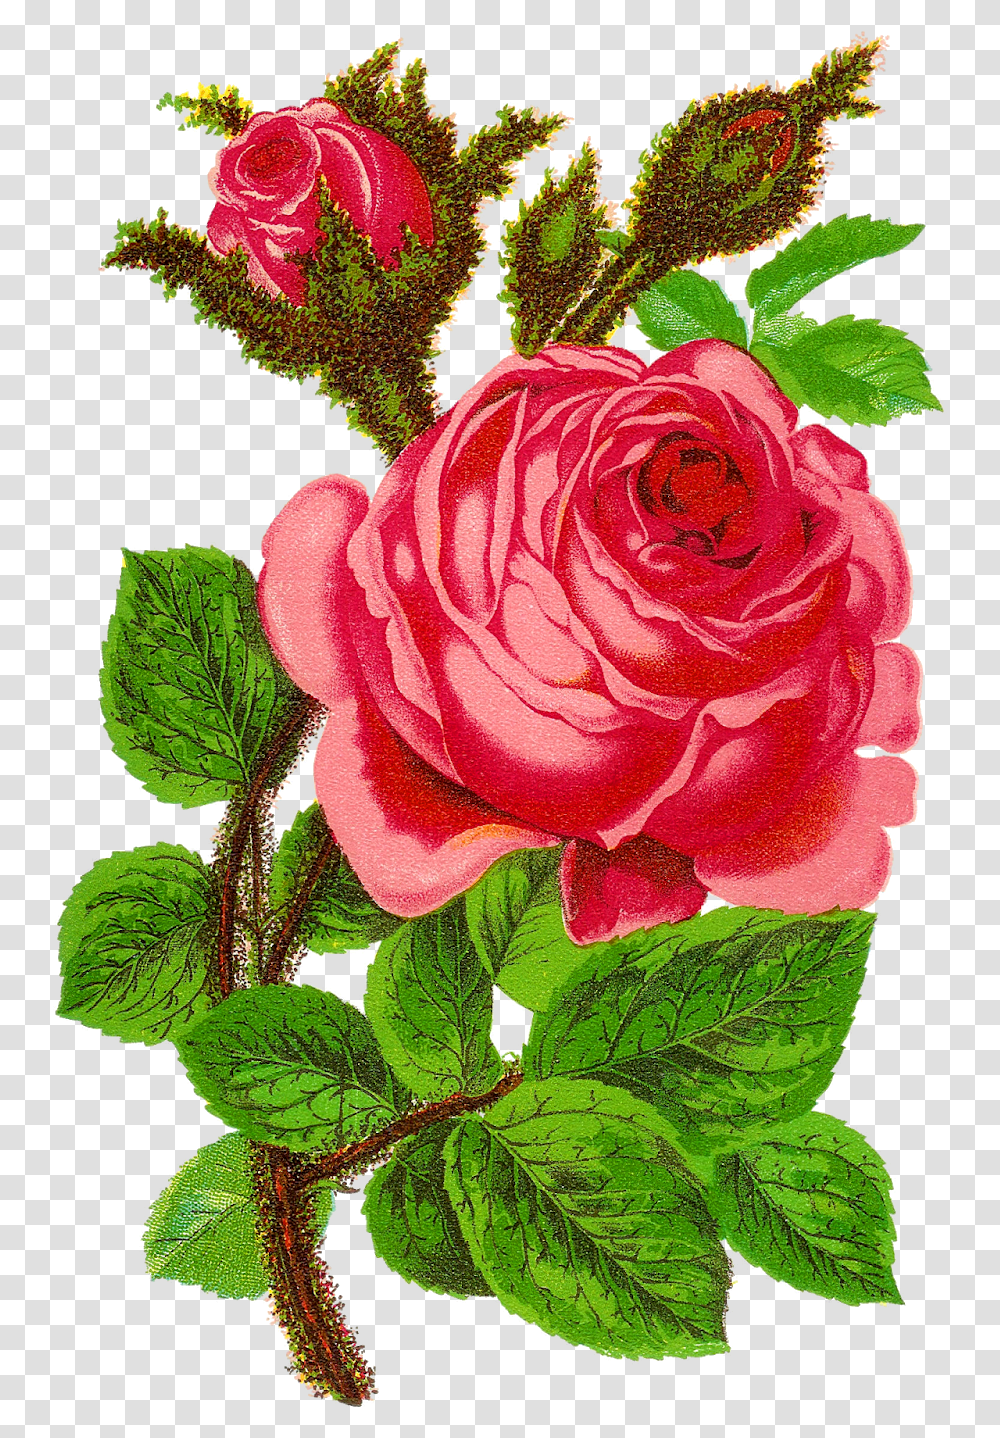 Rose Flower Clip Art Floral Craft Supply Digital Download Rose Digital Flower Design, Plant, Blossom, Leaf, Geranium Transparent Png